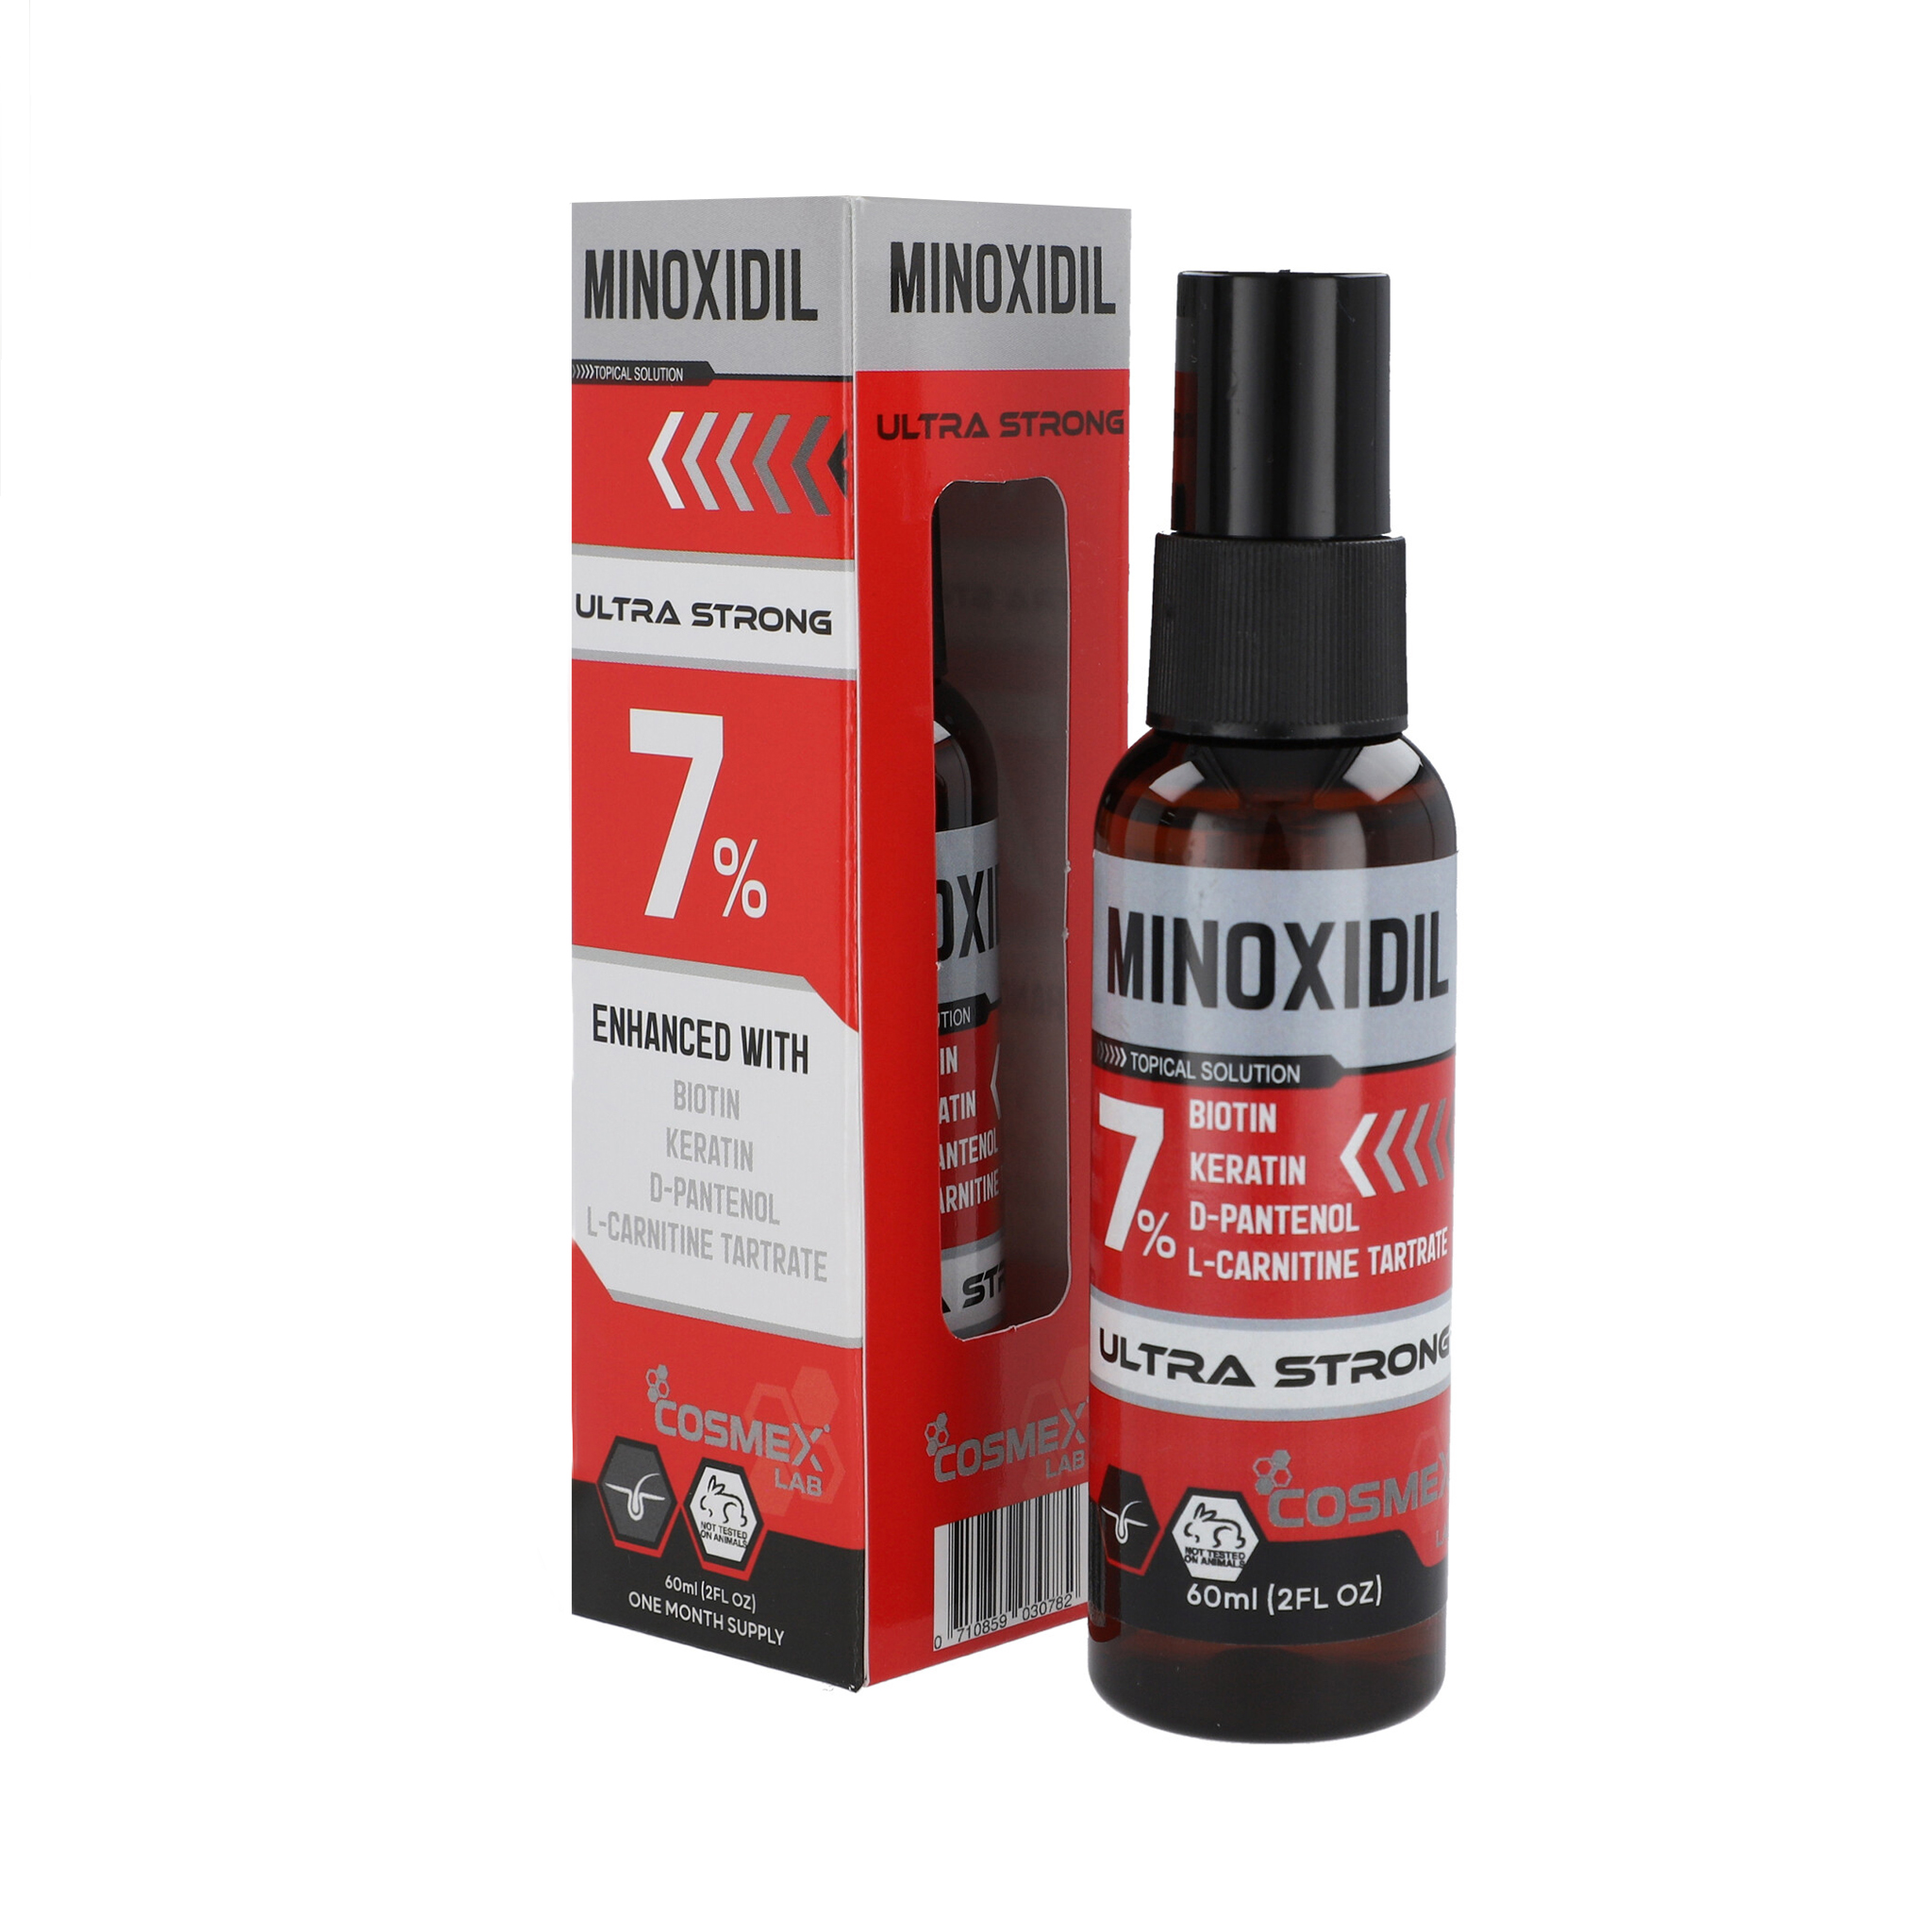 MINOXIDIL 7% Crecimiento de Cabello CosmexLab Ultra Strong 60 ml